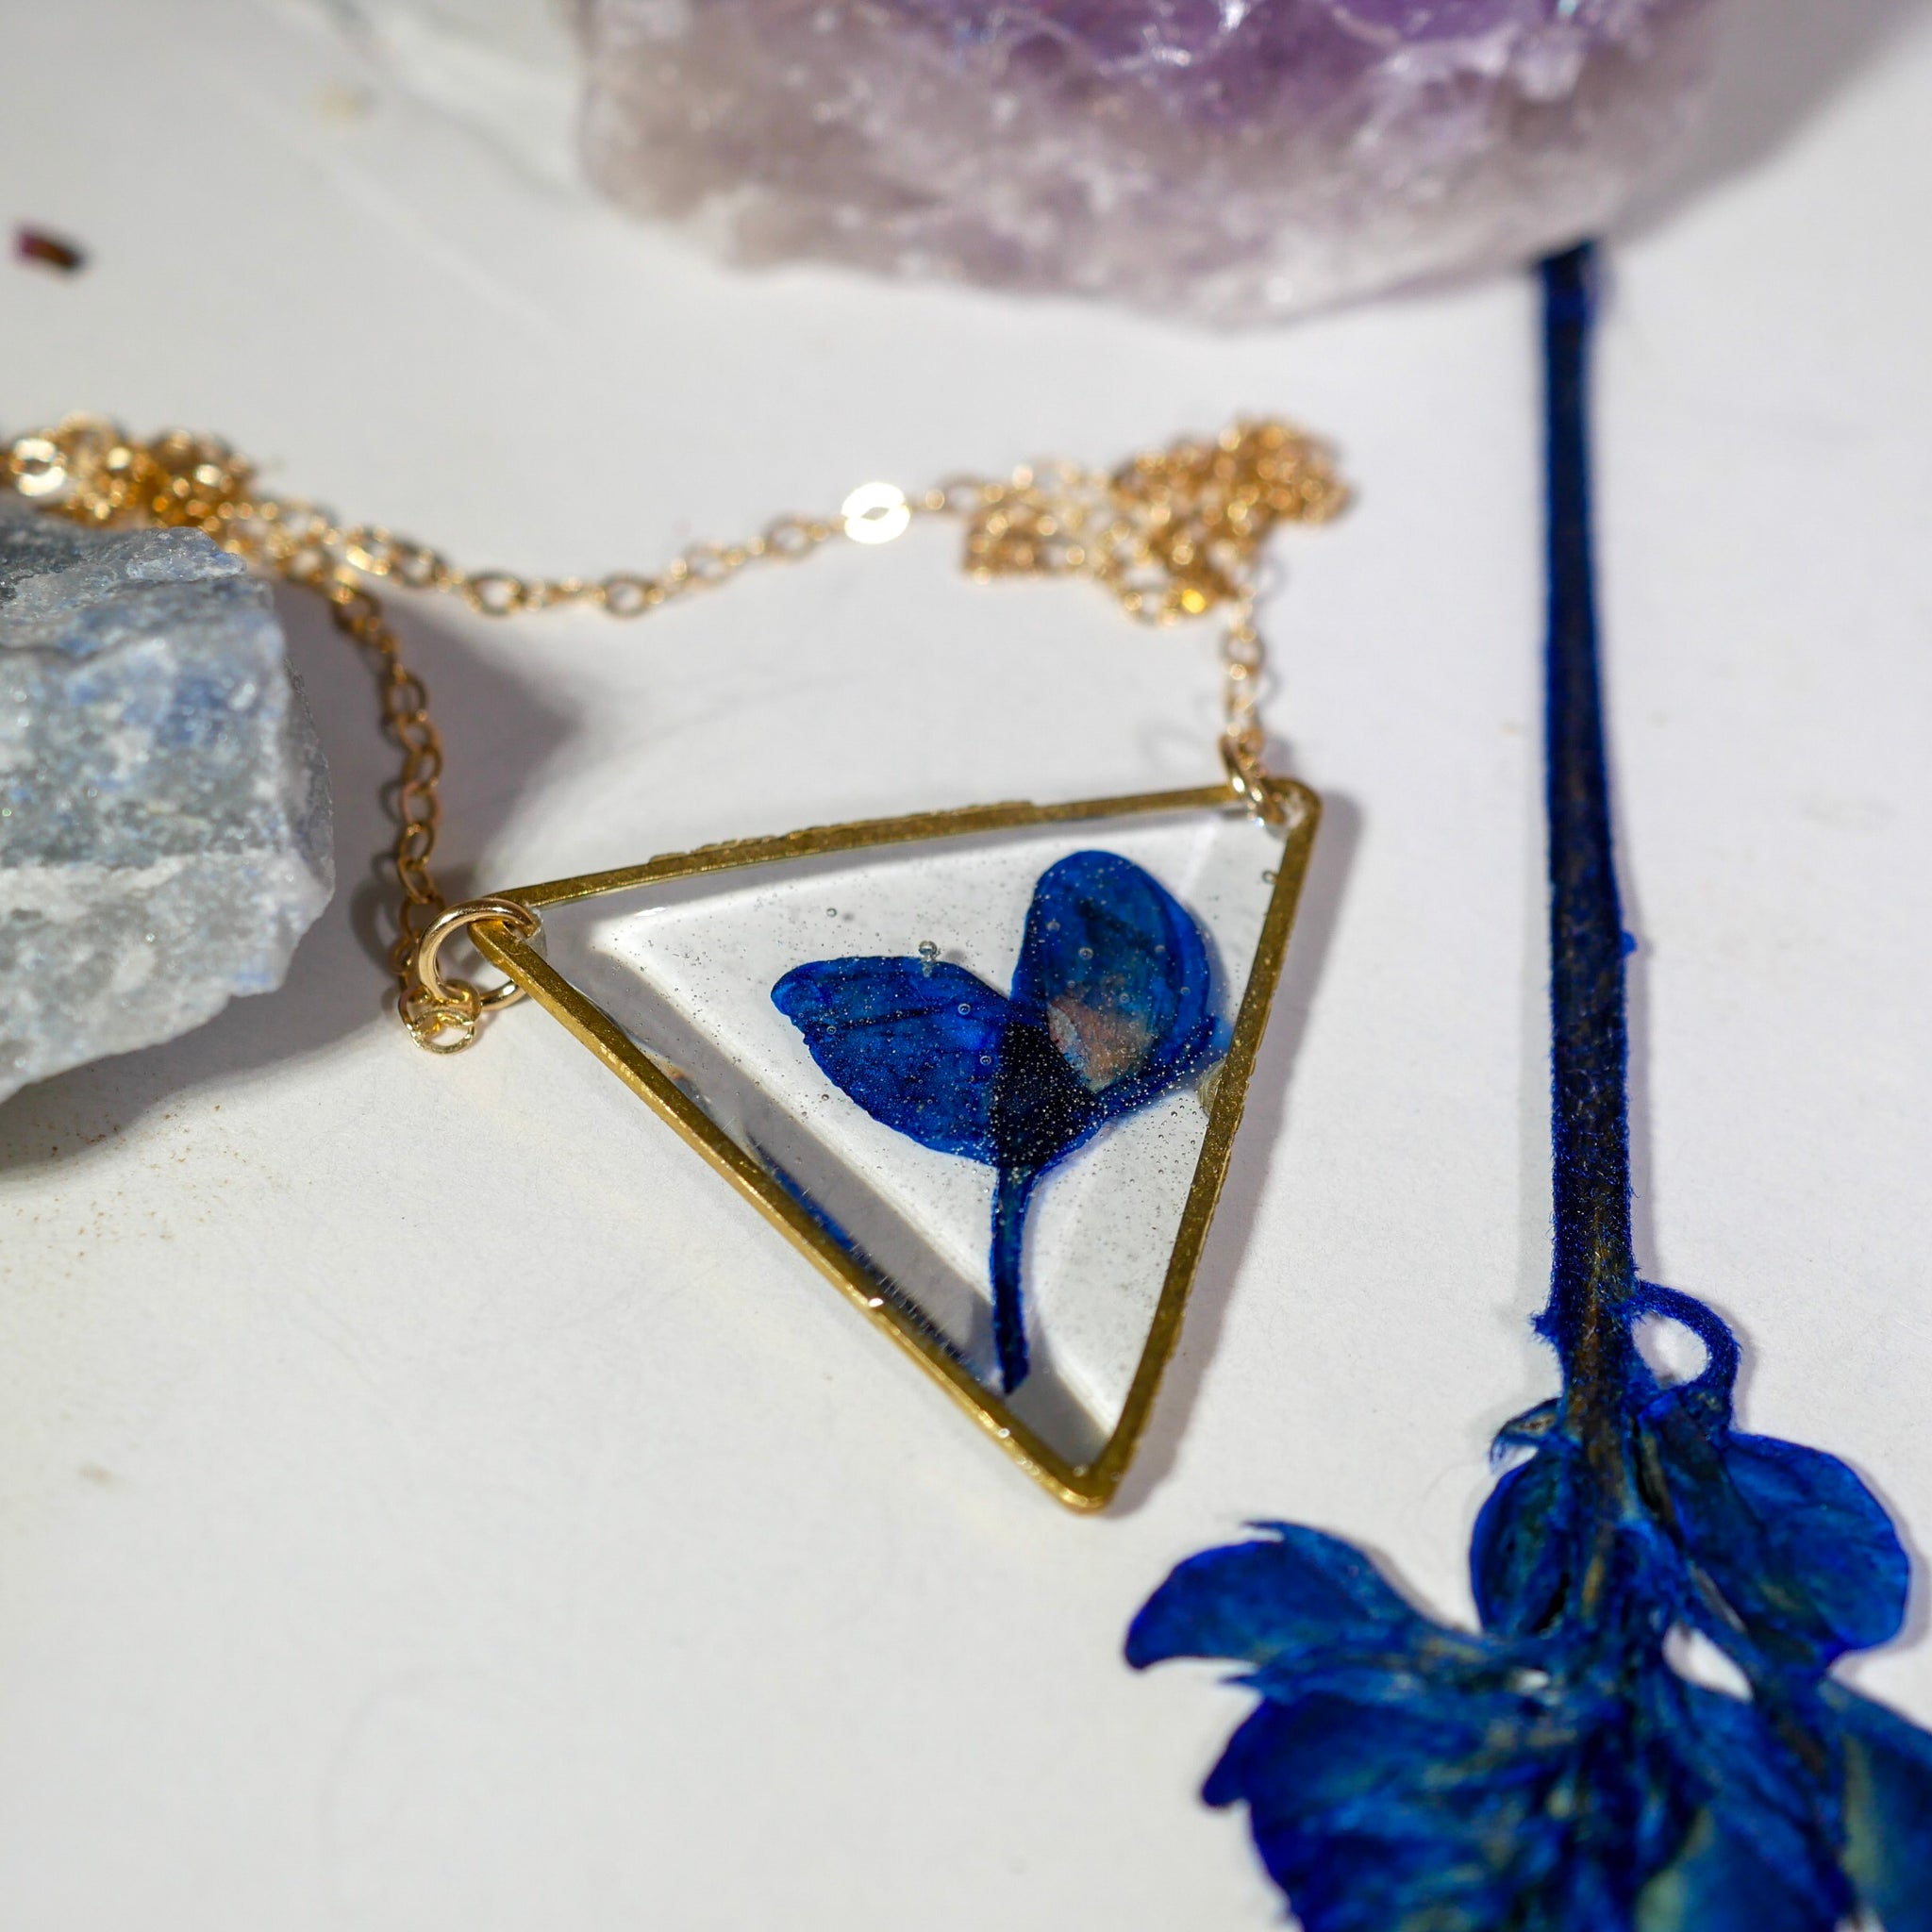 Bluebonnet Triangle Necklace